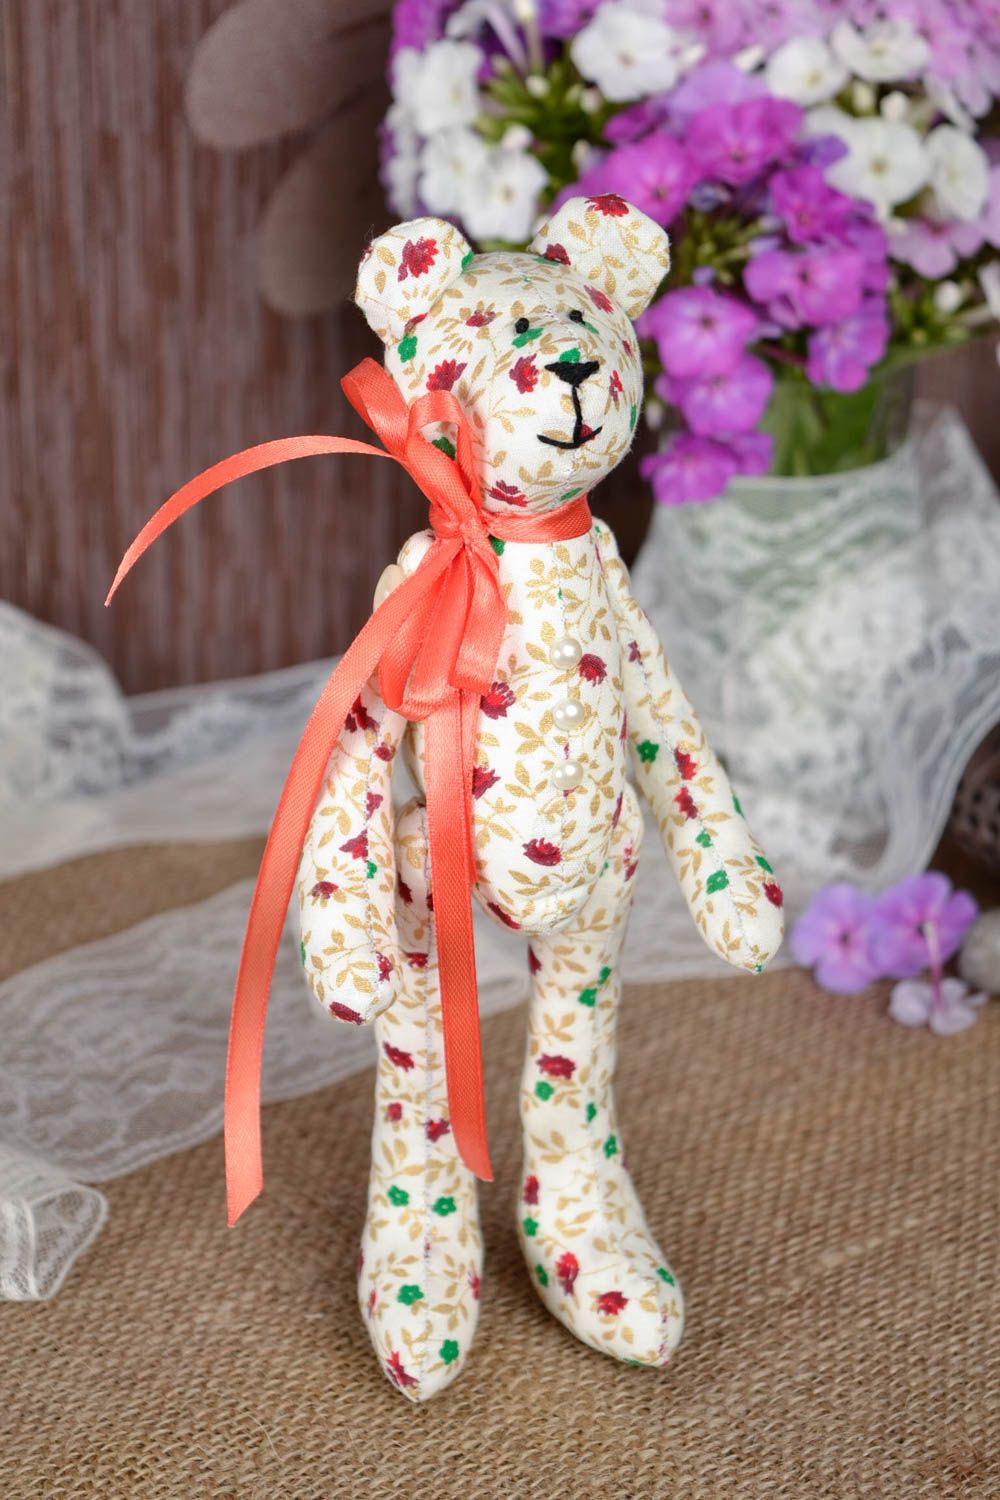 Jouet Ours en tissu de coton fait main à motif floral Cadeau pour enfant photo 1